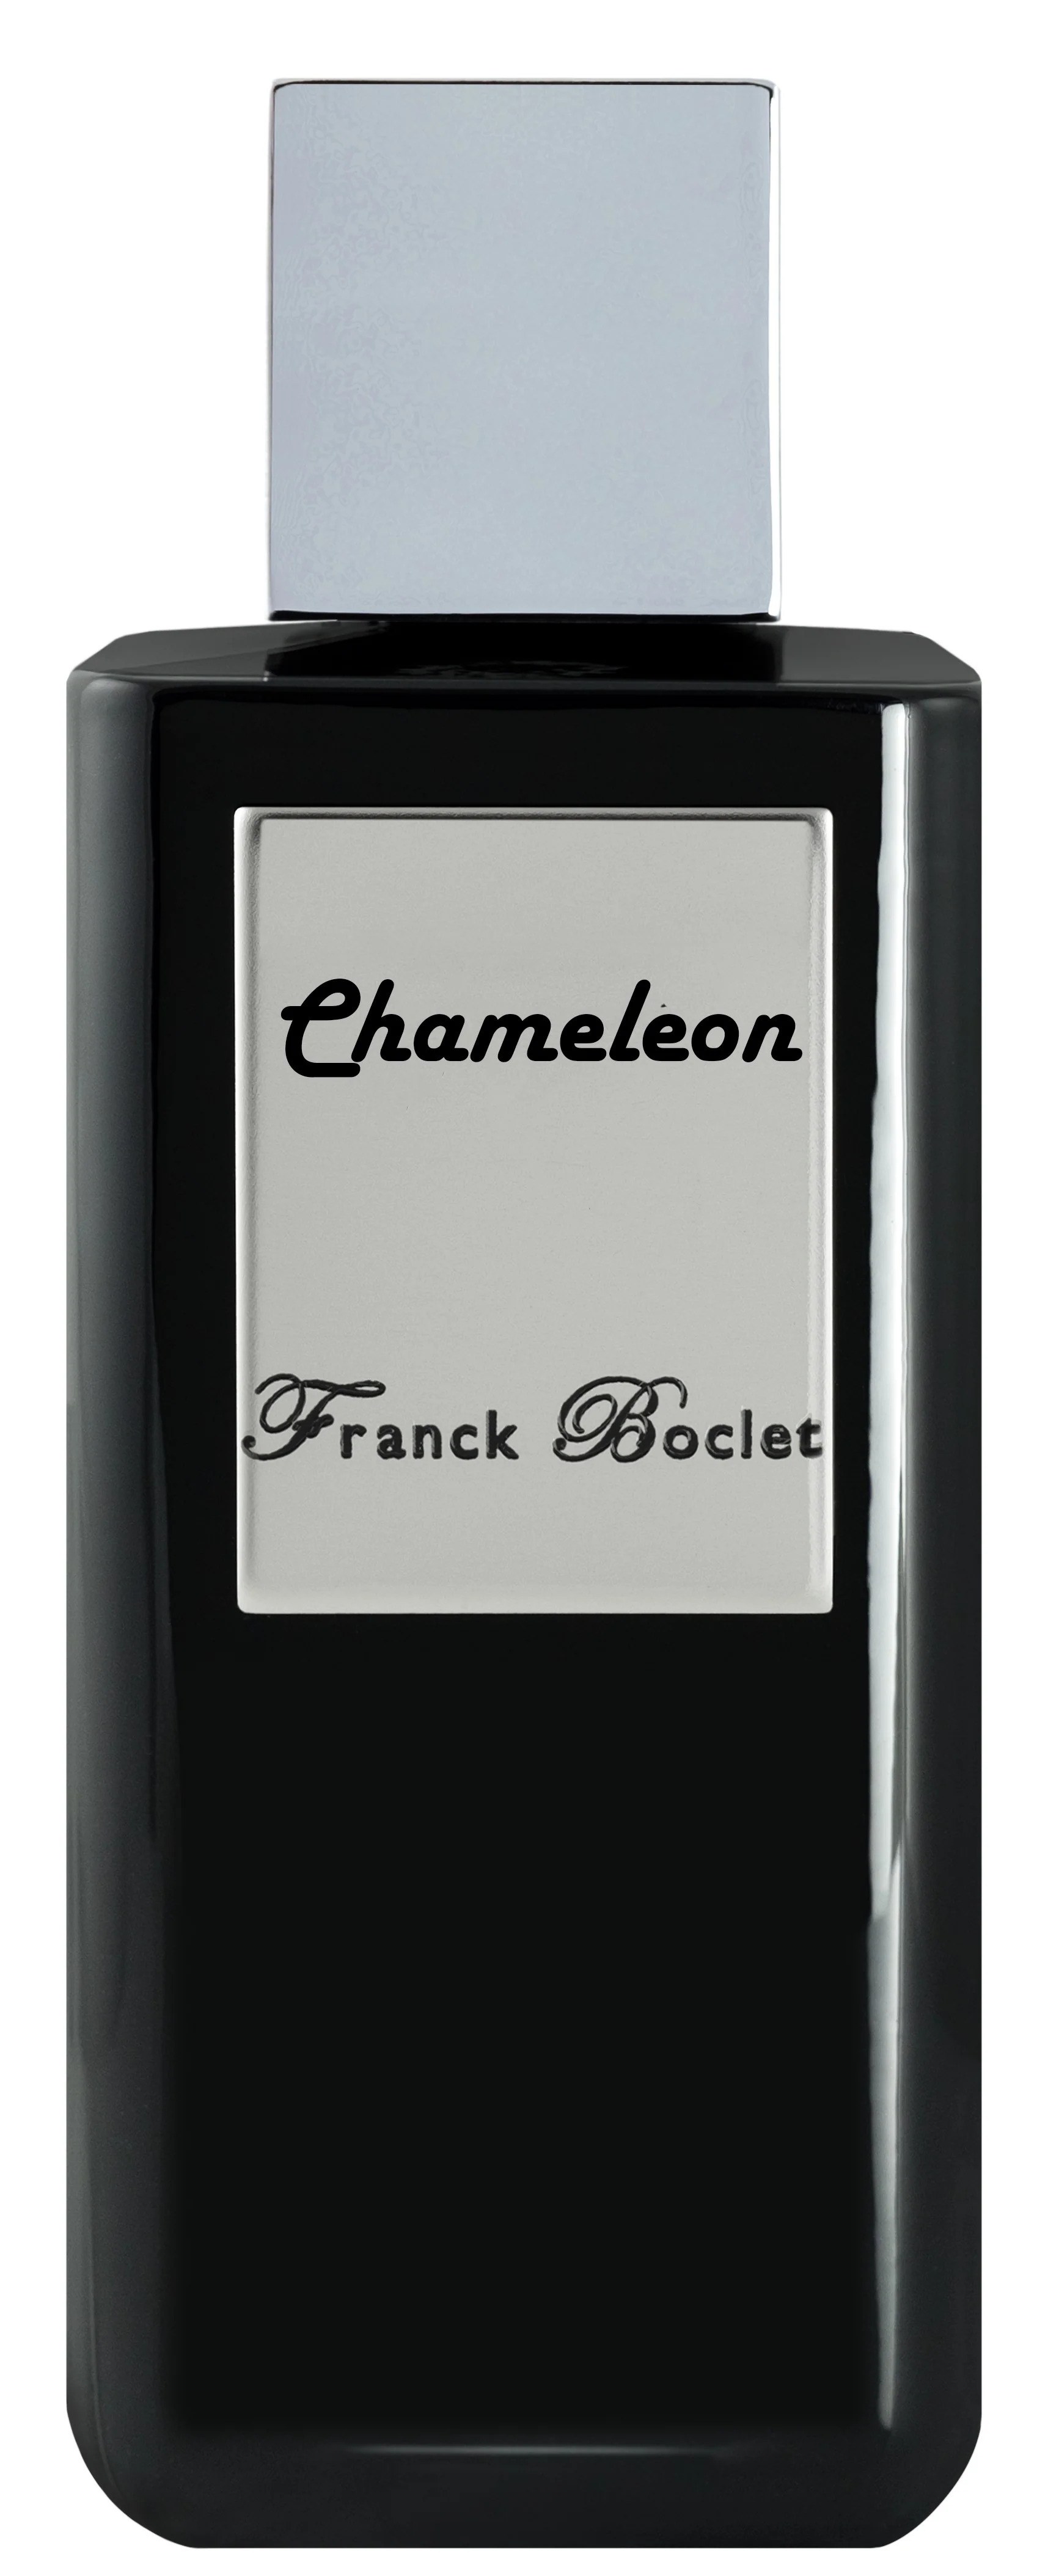 Парфюмерная вода Franck Boclet Chameleon, 100 мл франция изнутри как на самом деле живут в стране изысканной кухни и высокой моды соколова буалле а